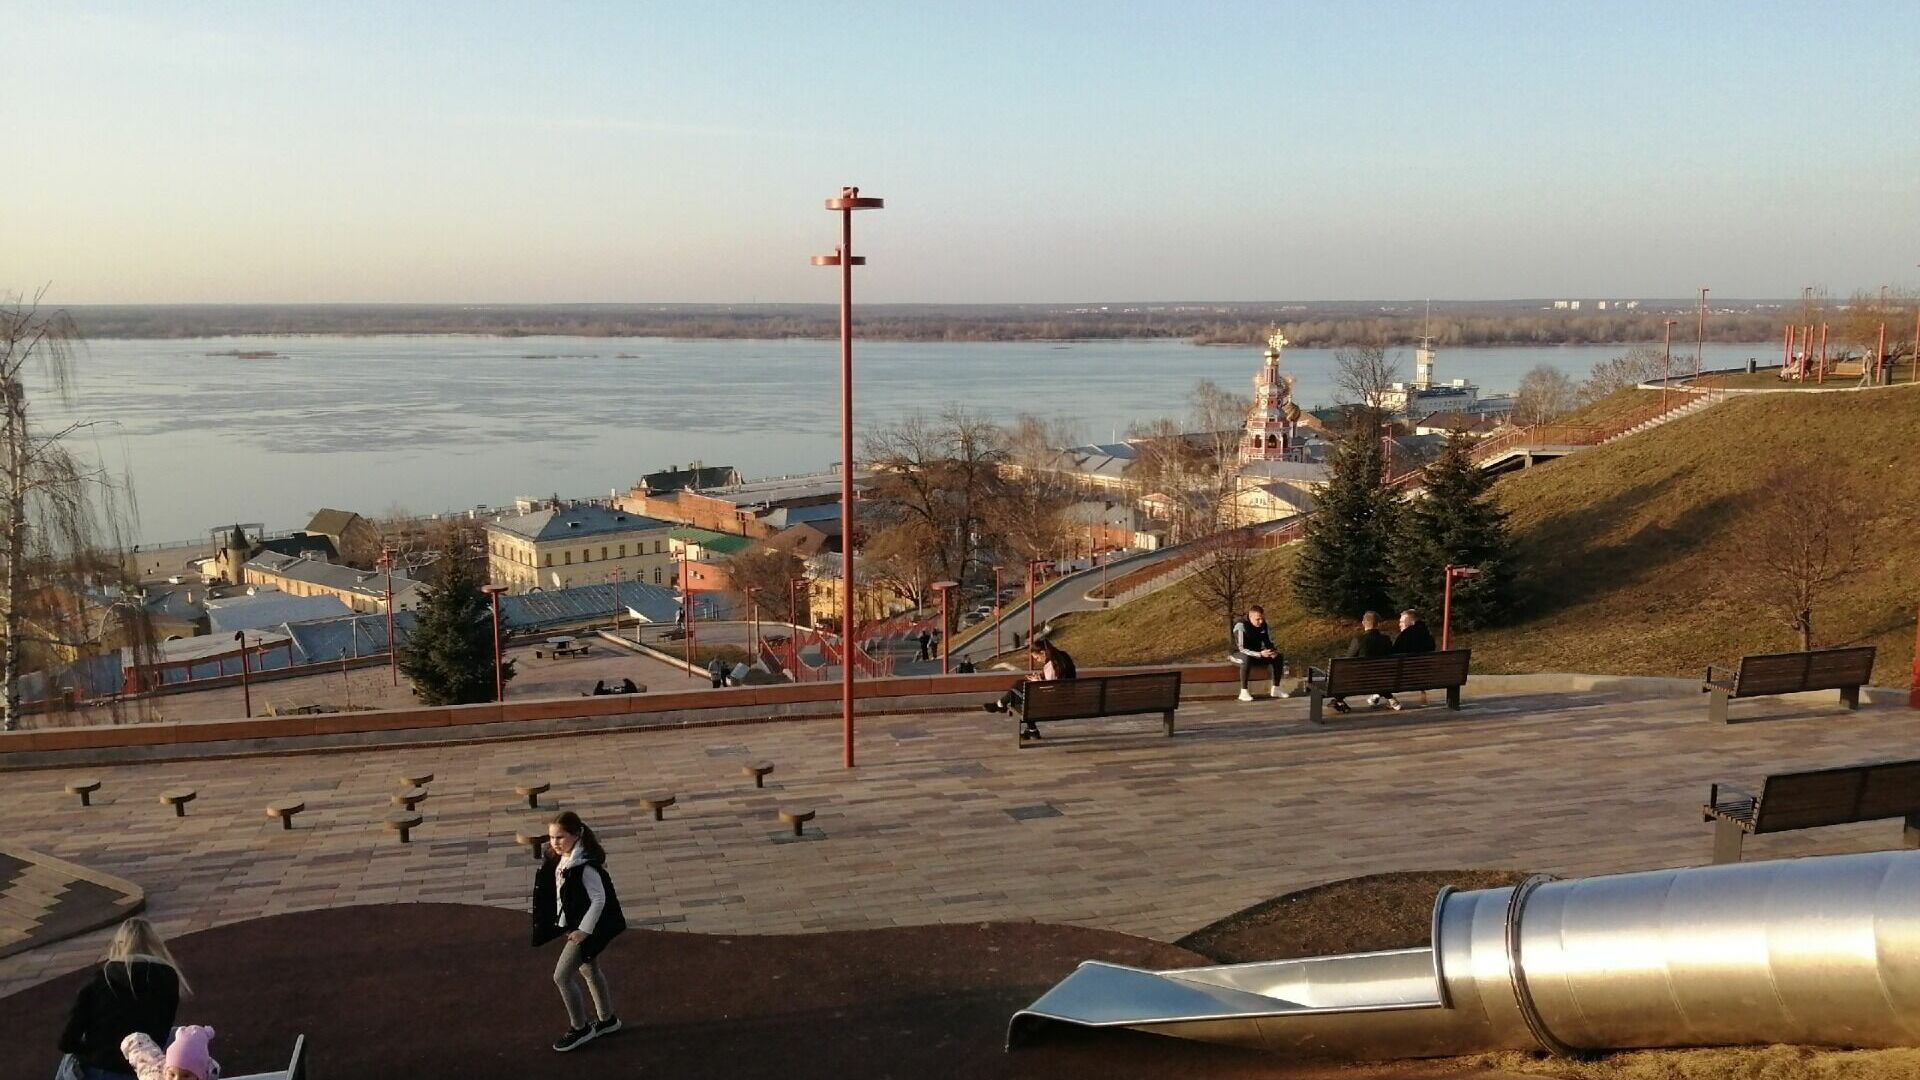 Похолодание до -3 придет в Нижний Новгород в выходные 15 и 16 апреля